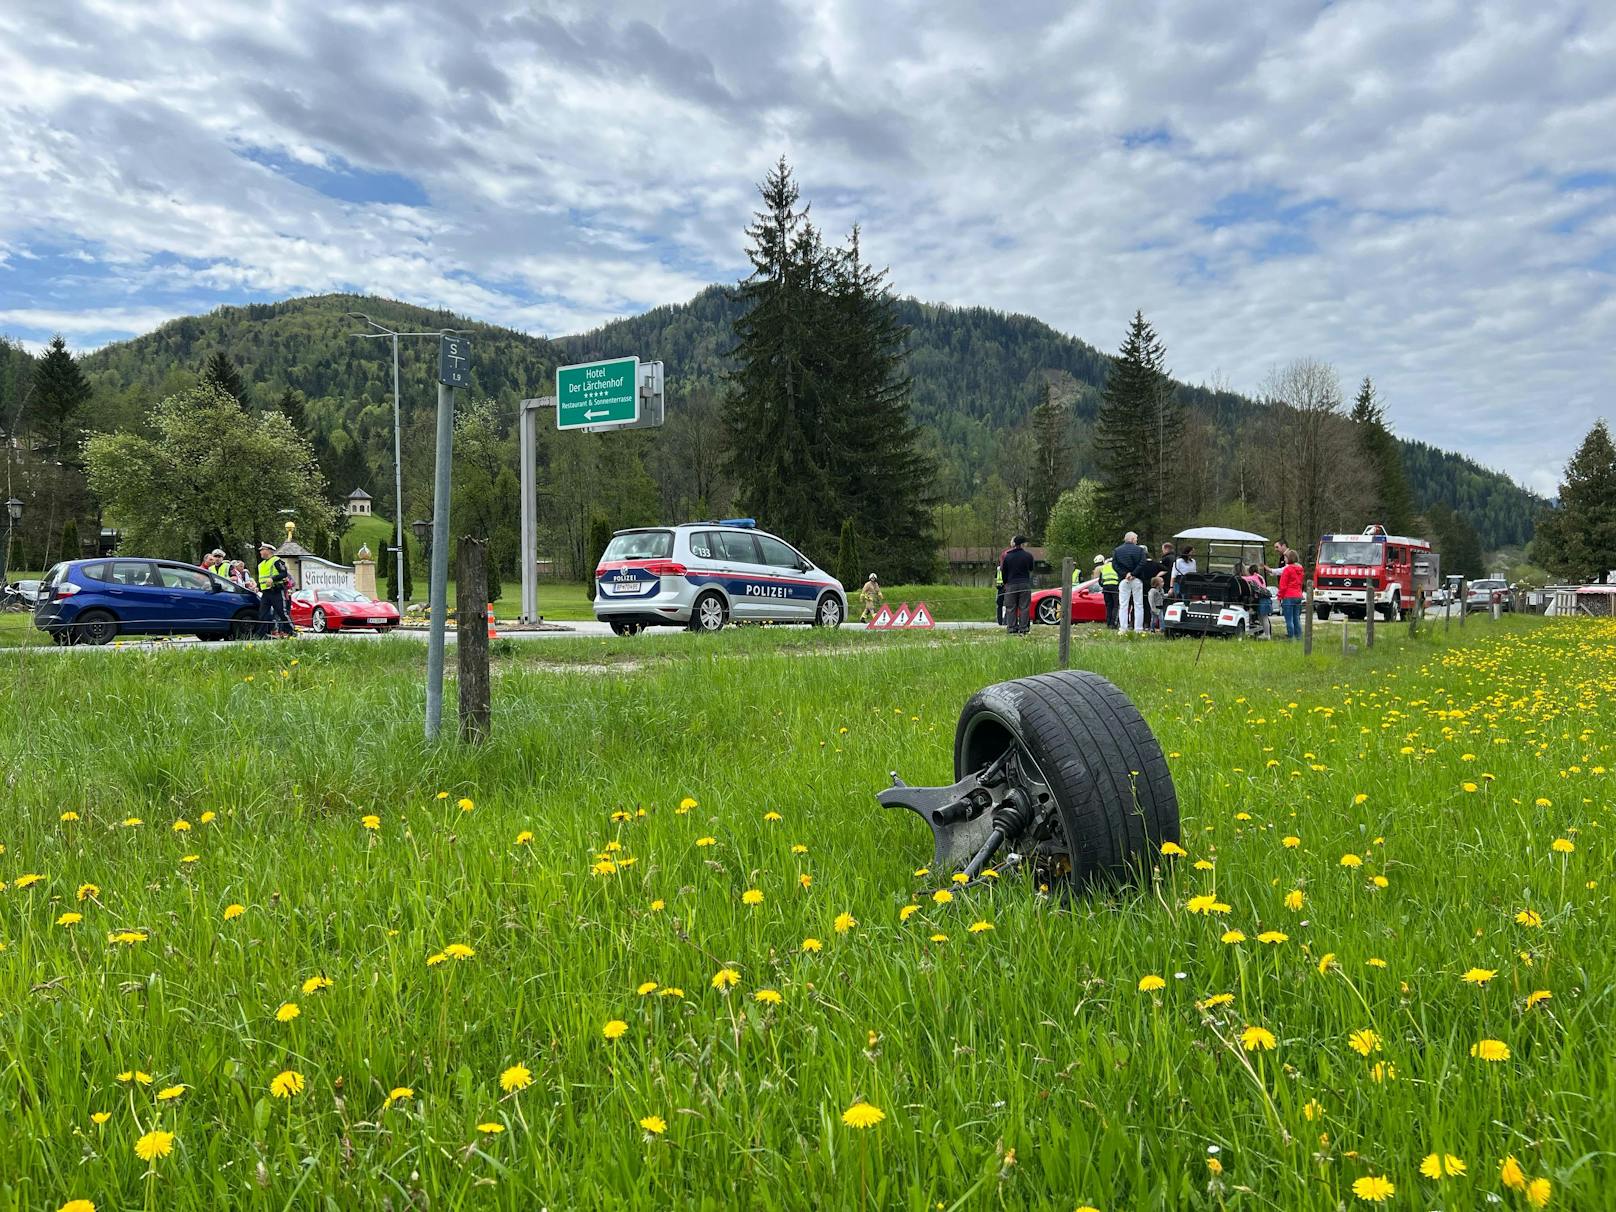 Die 66-jährige Österreicherin wurde mit leichten Verletzungen in das Krankenhaus nach St. Johann/T eingeliefert. Der 42-jährige Fahrzeuglenker zog sich ebenfalls leichte Verletzungen zu. Während der Unfallaufnahme war die B178 im Bereich der Unfallstelle nur einspurig befahrbar.